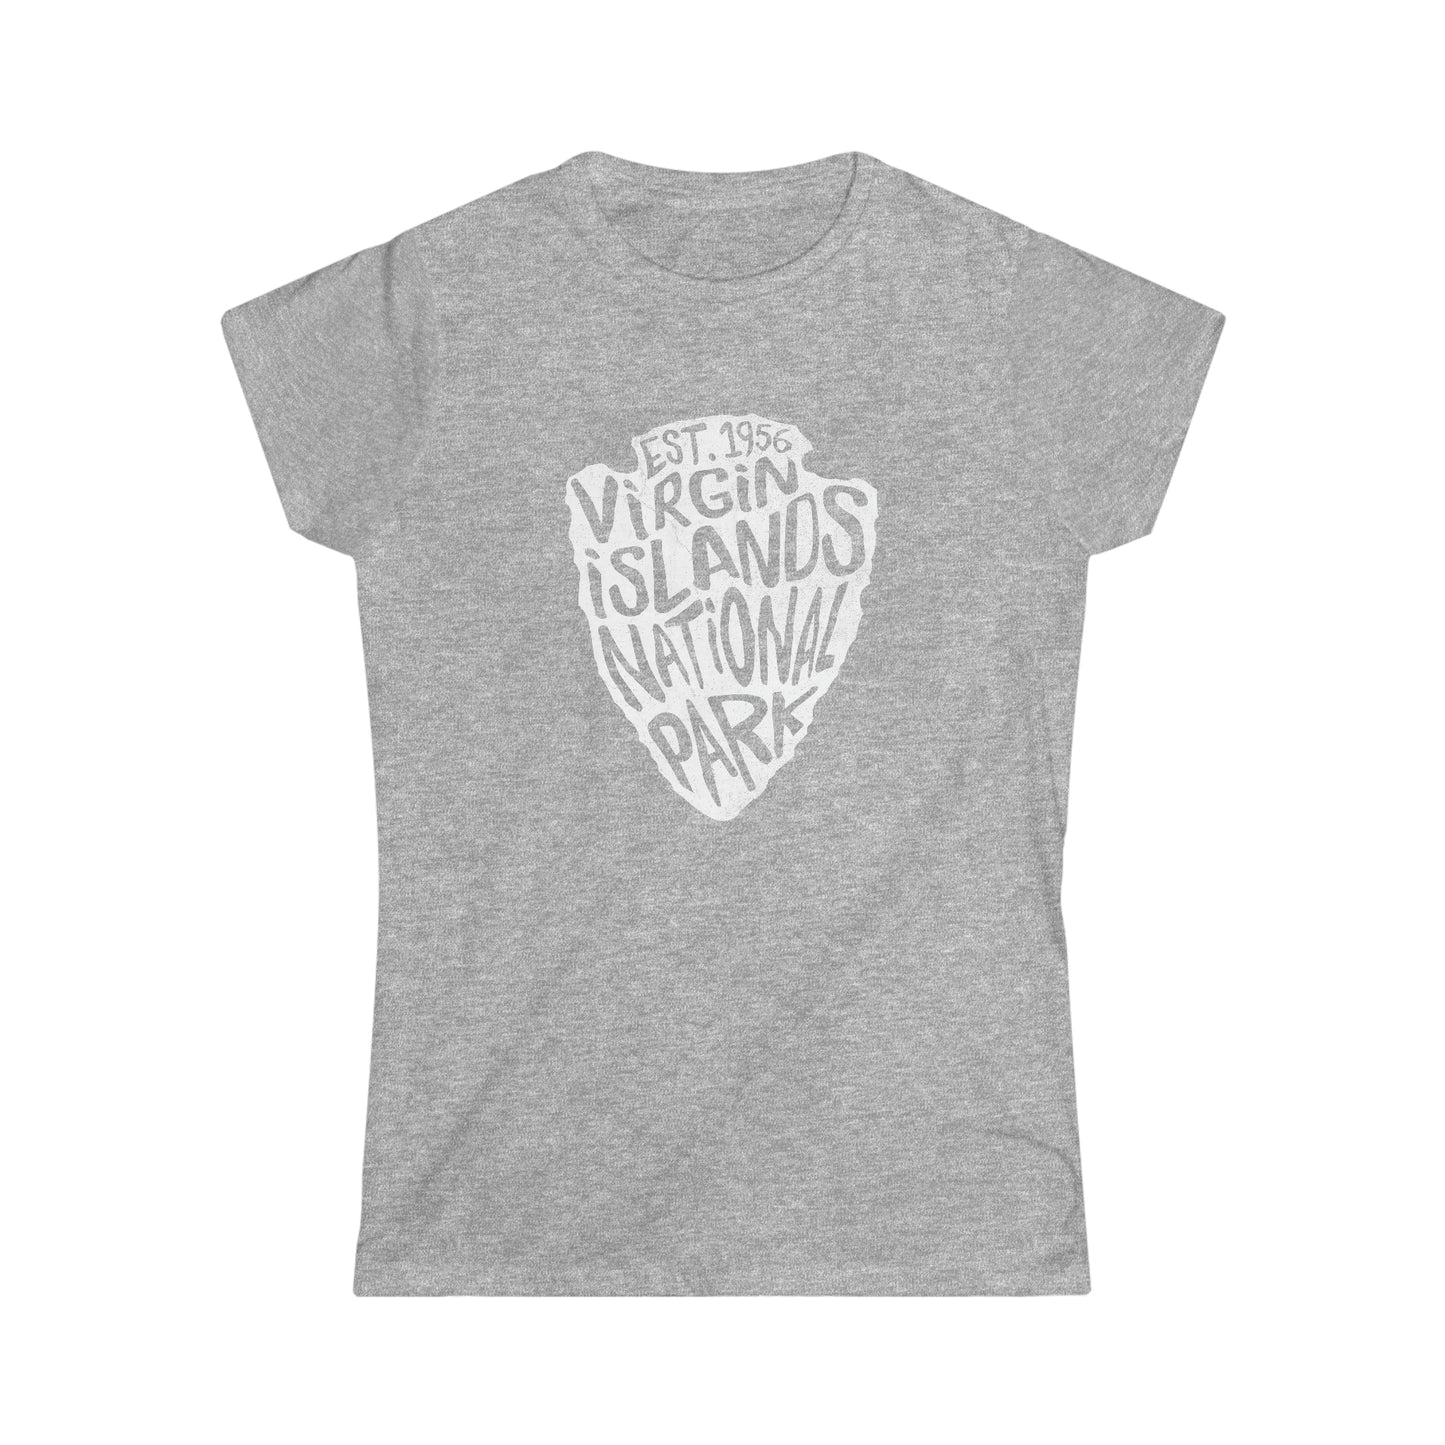 Virgin Islands National Park Women's T-Shirt - Arrowhead Design